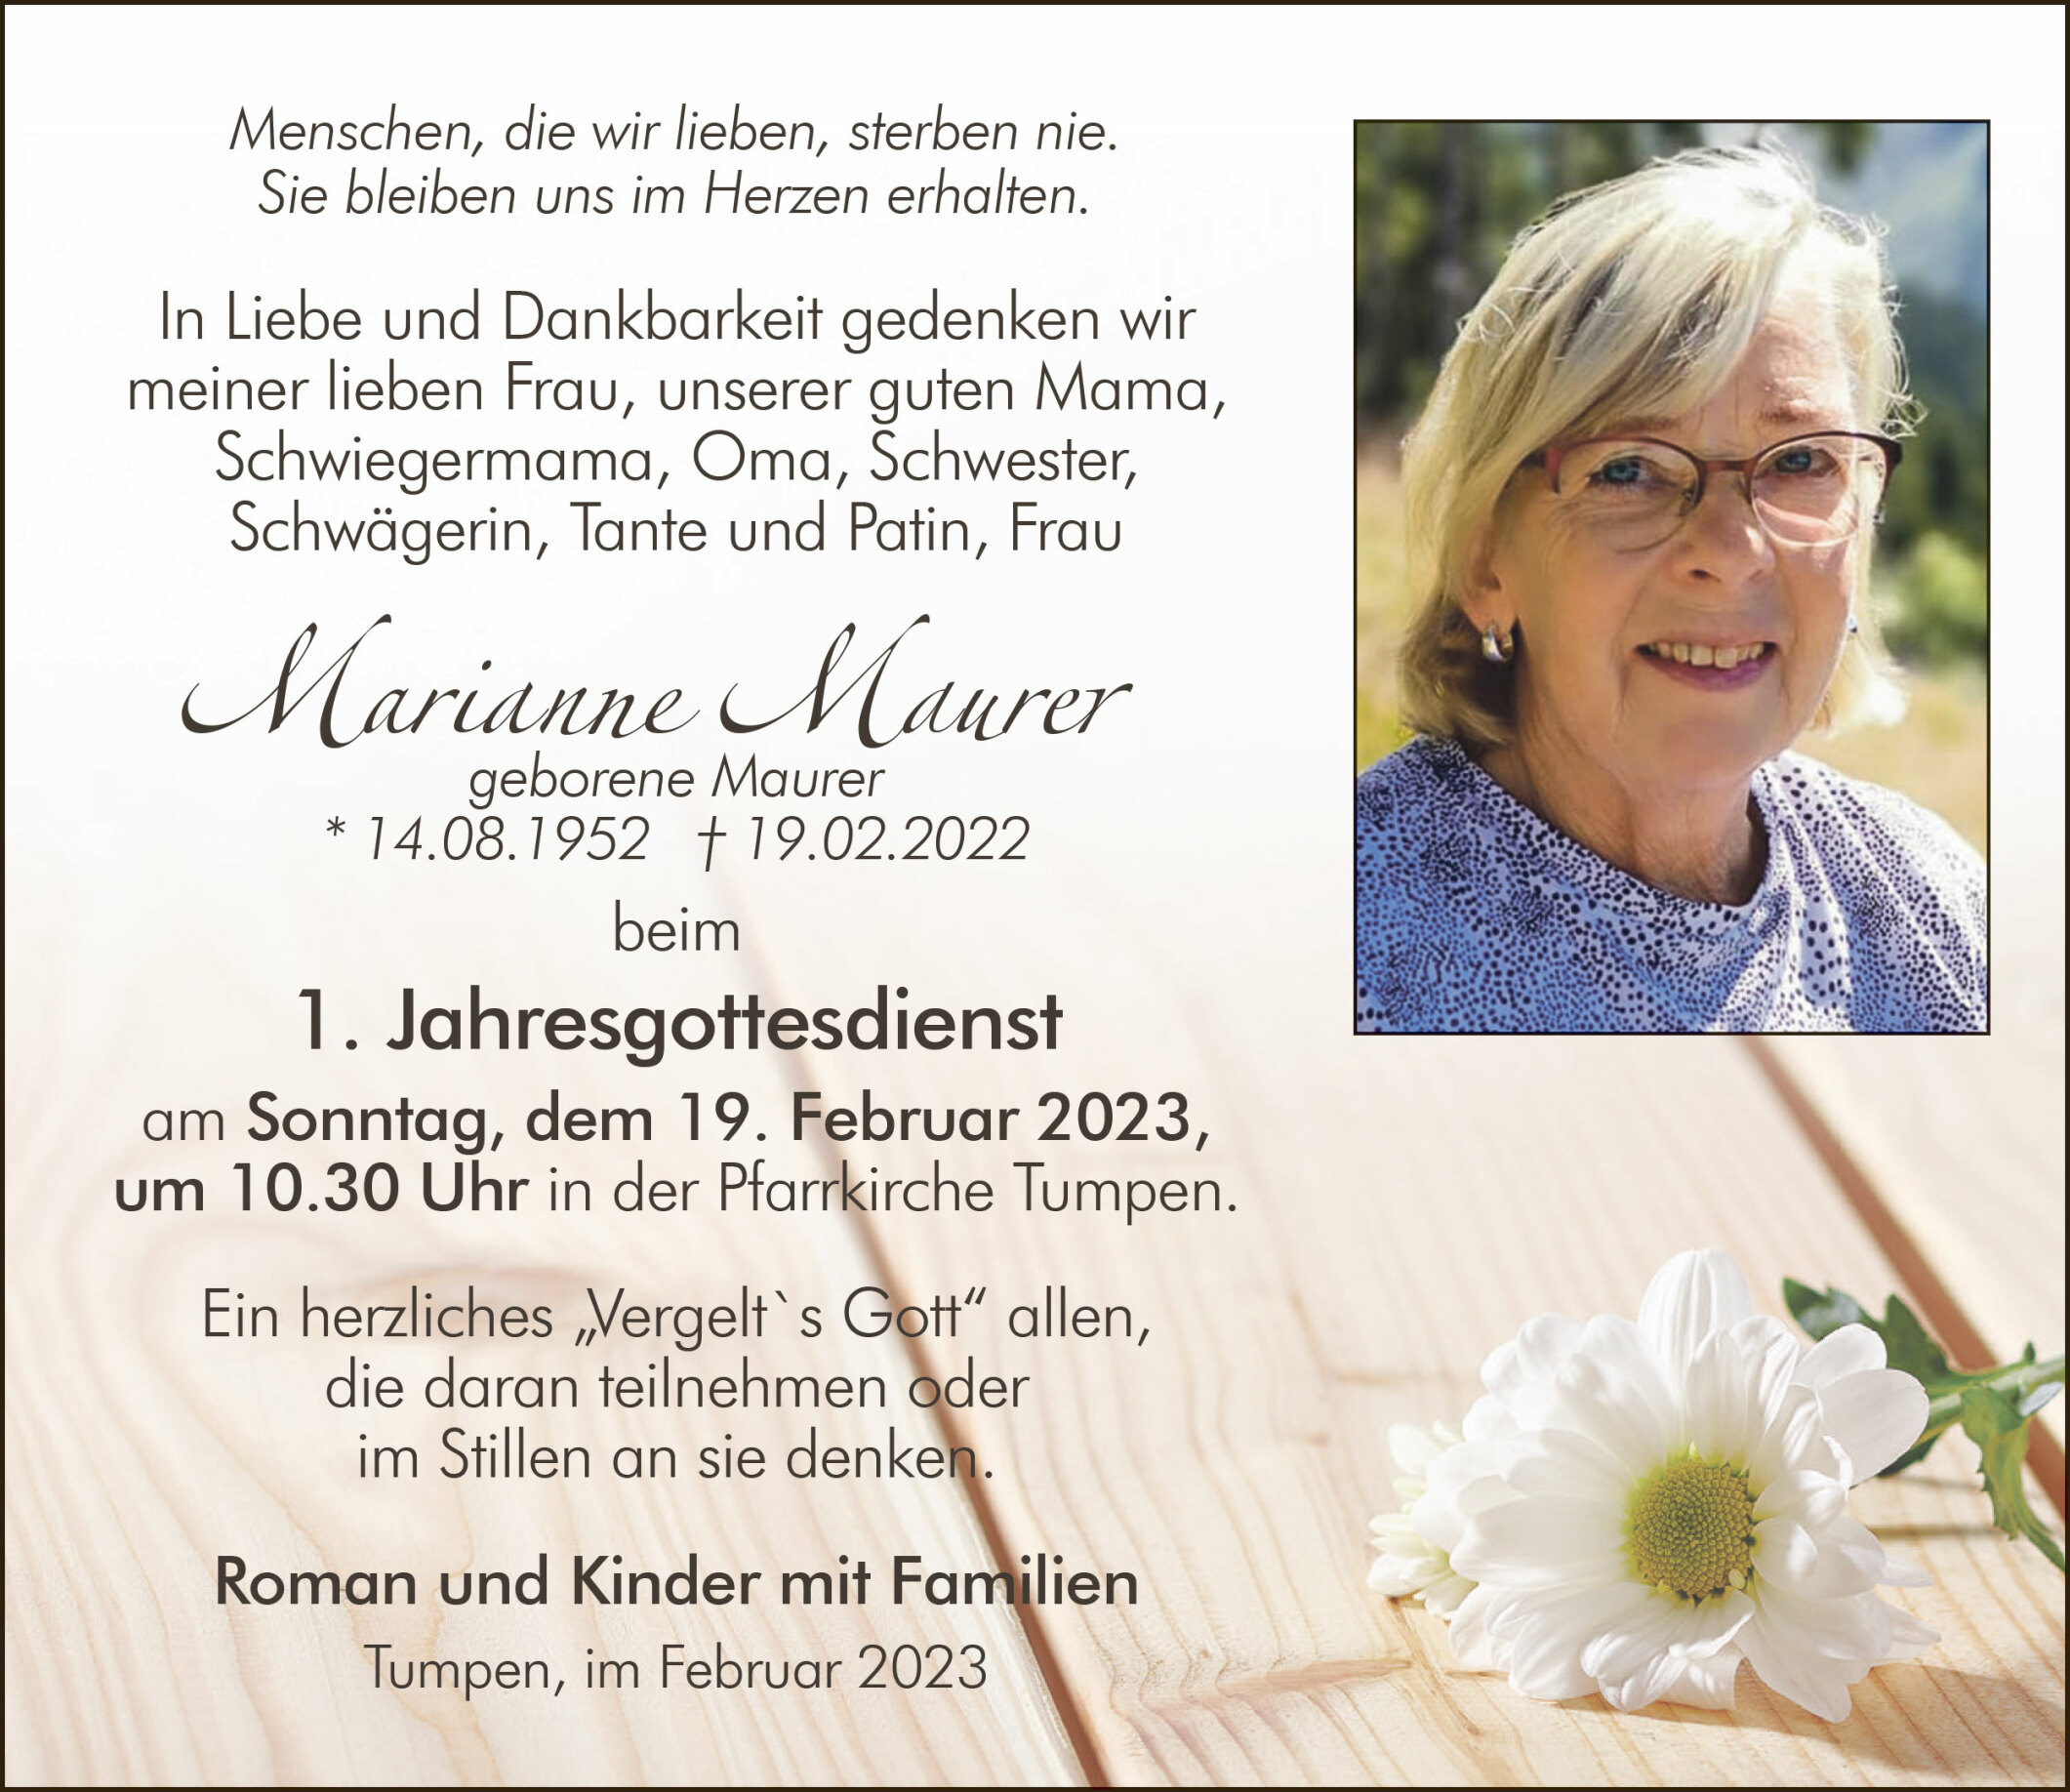 Marianne Maurer